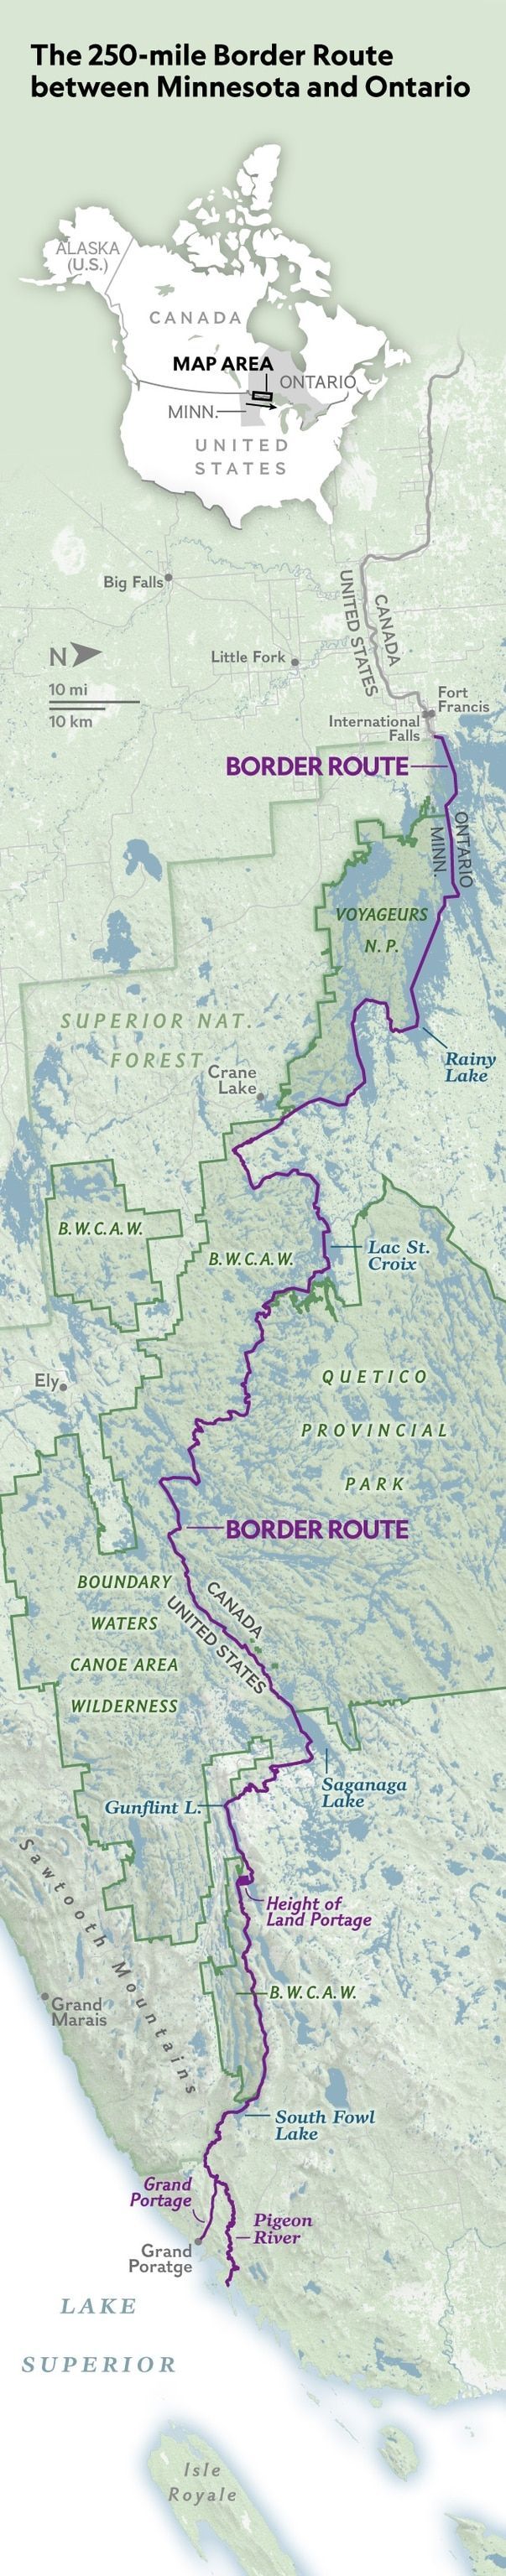 De vierhonderd kilometer lange Border Route door Minnesota en Ontario